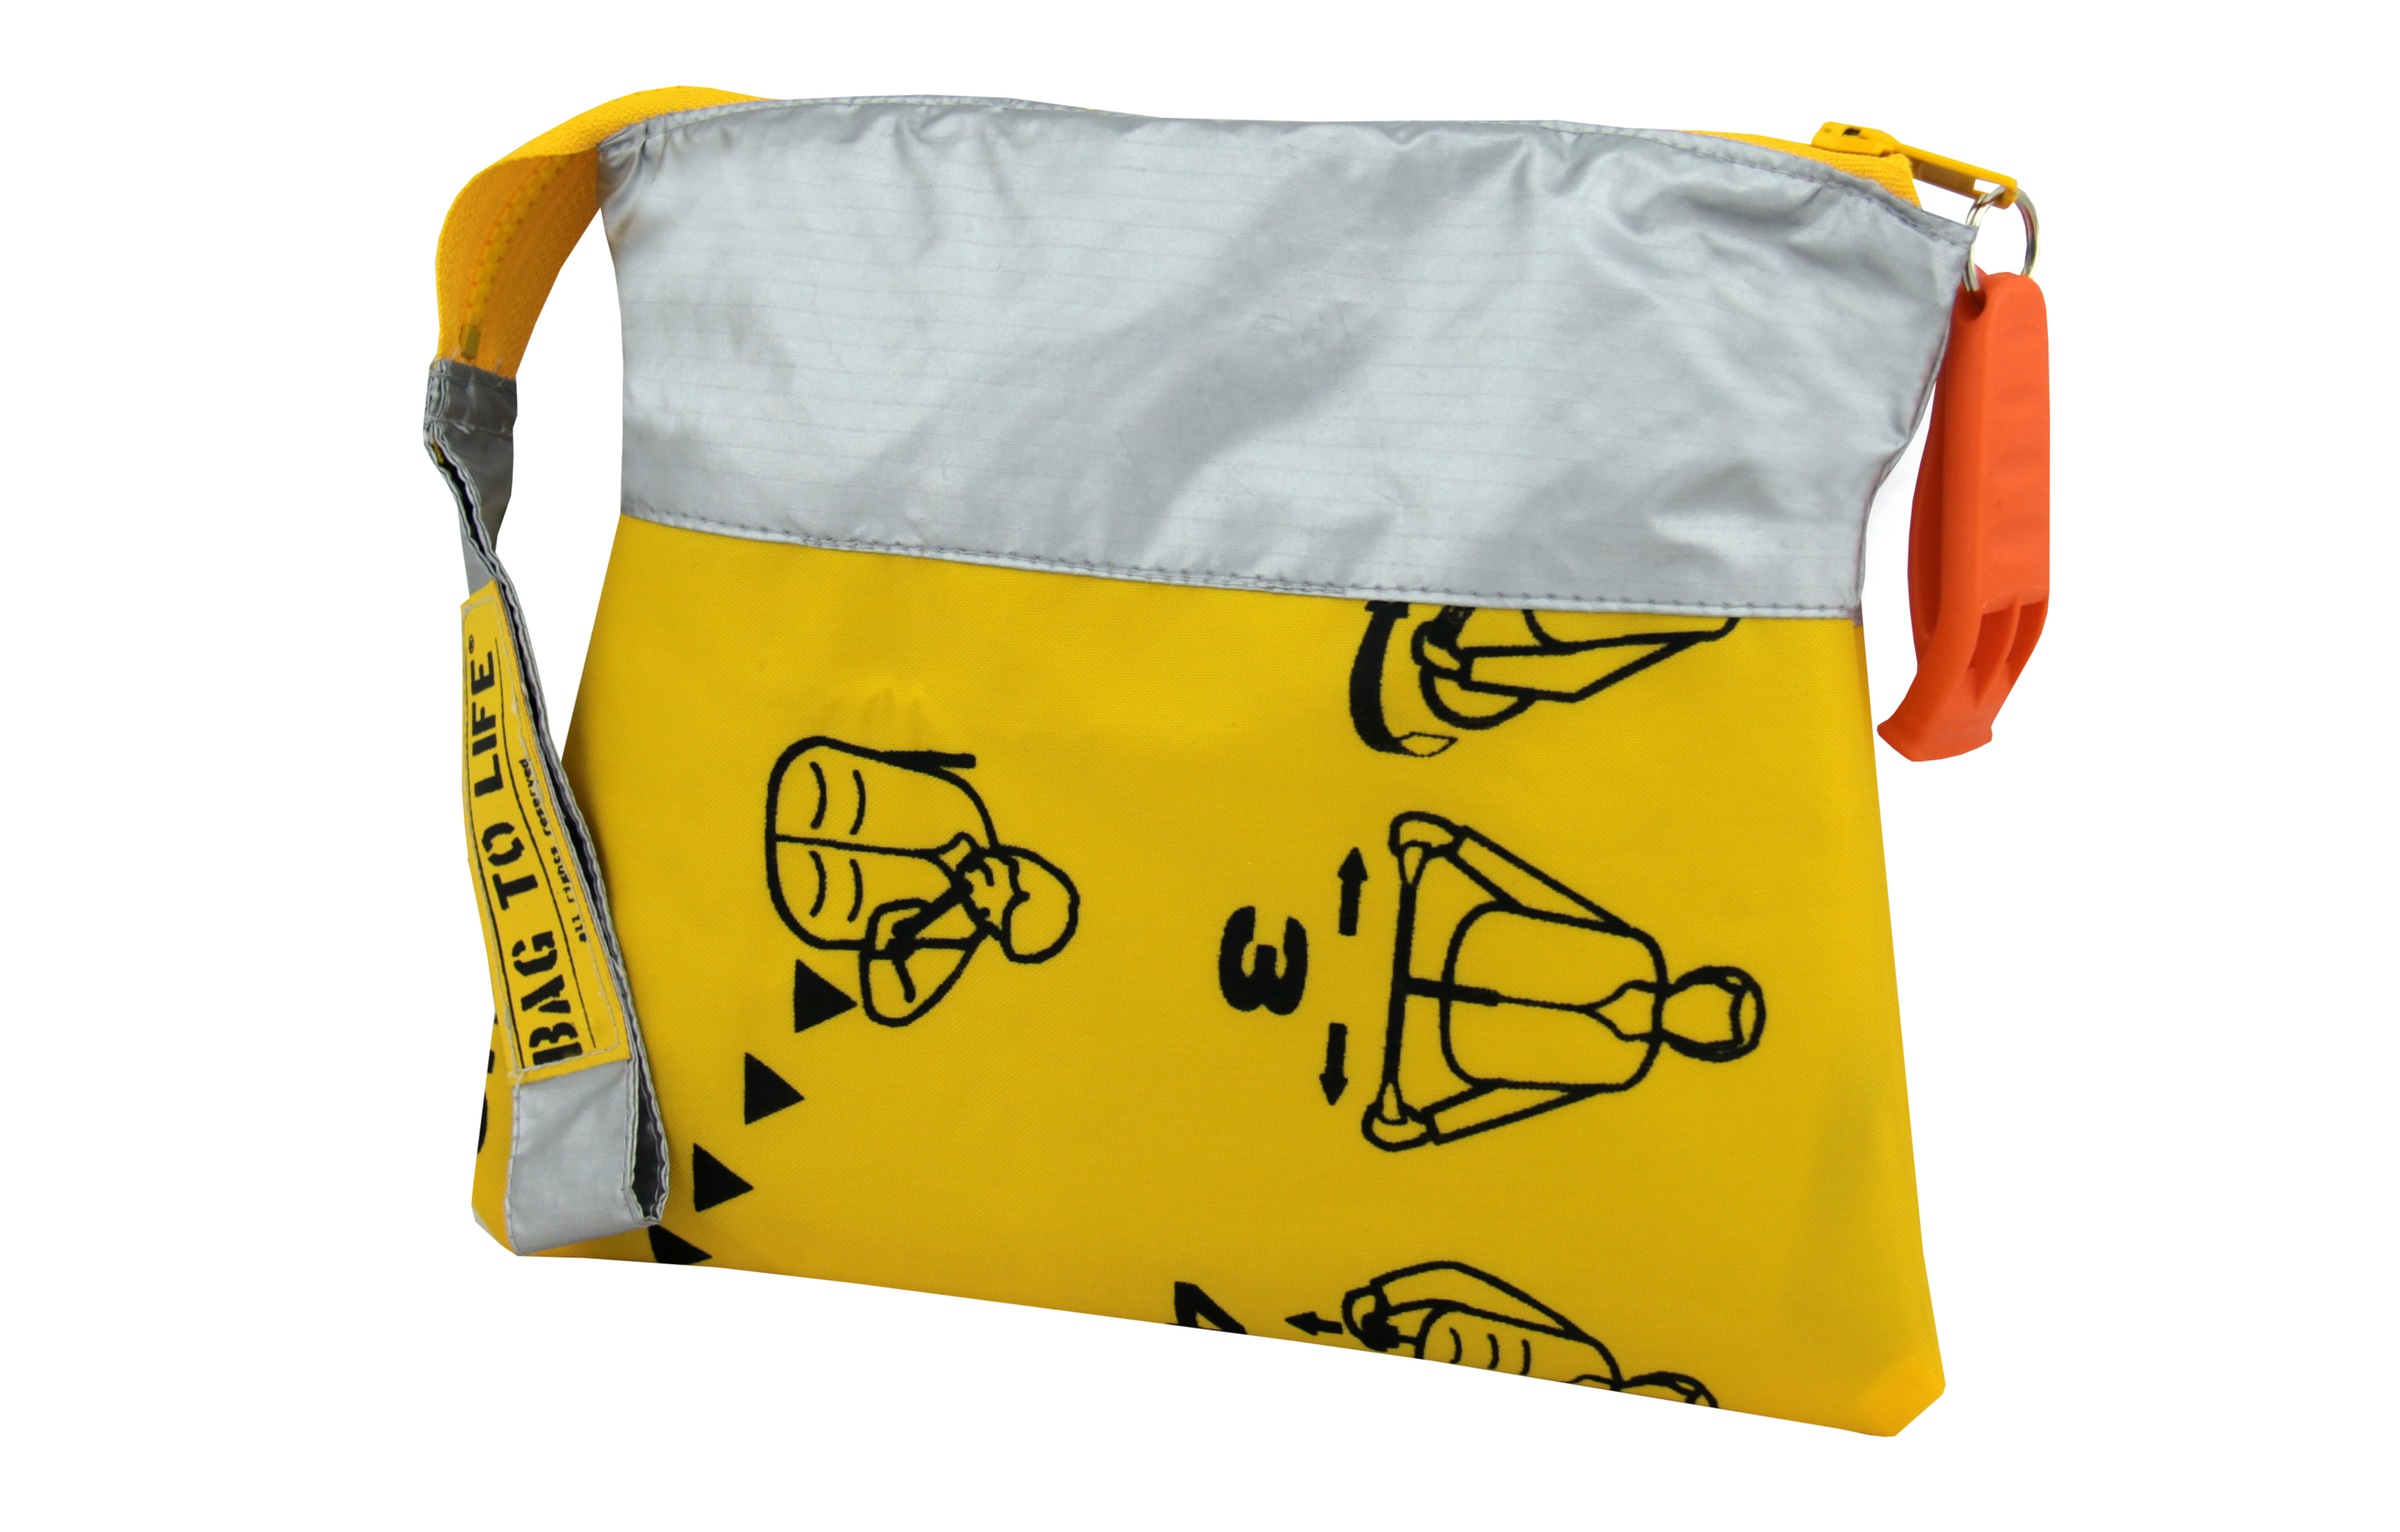 Bag to Life Umhängetasche »Follow me Bundle«, (2 tlg.), mit kleinem Etui, aus recyceltem Material